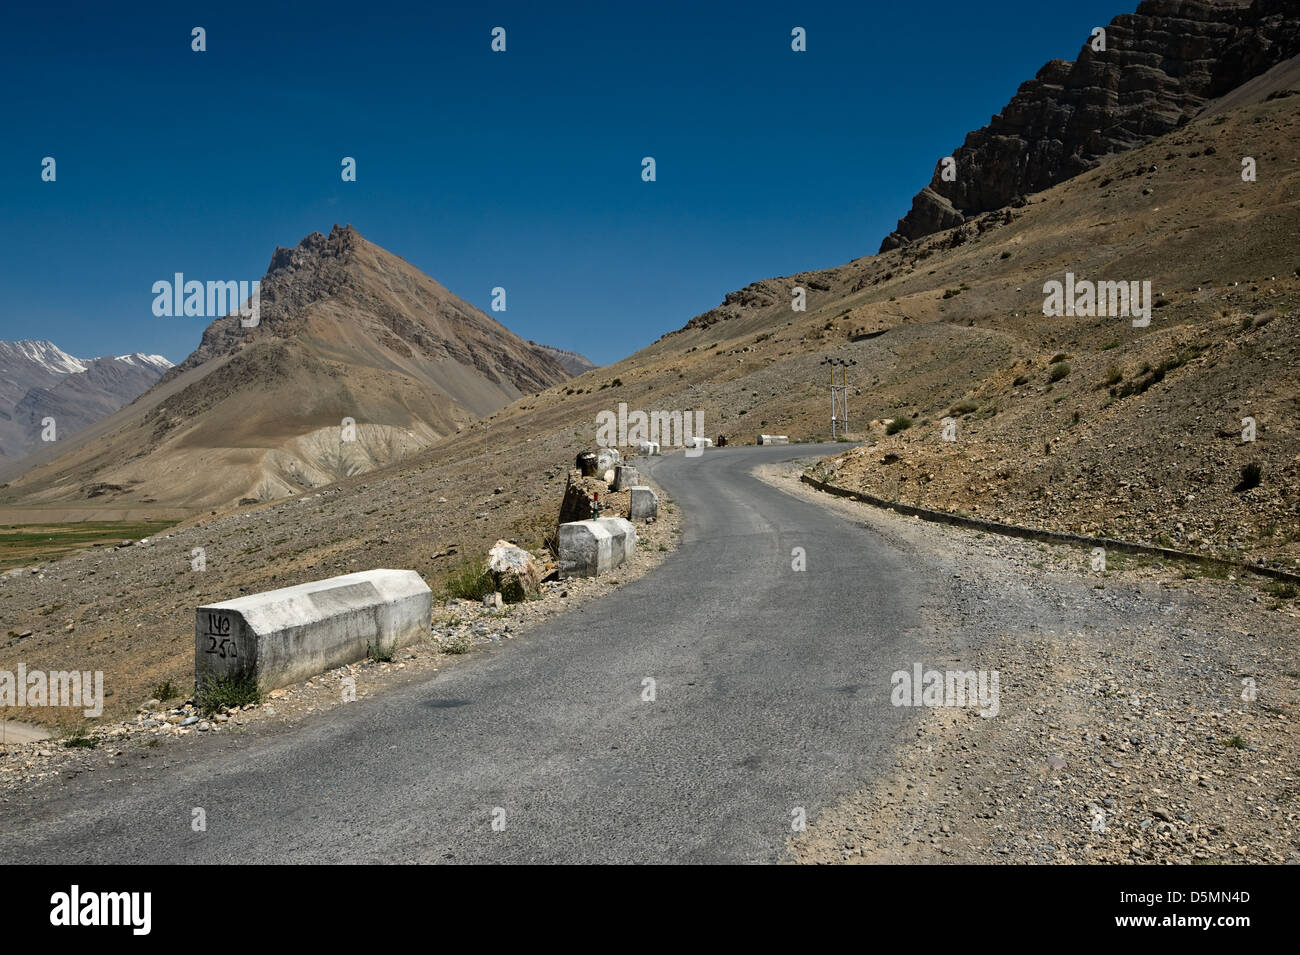 La carretera de montaña en los Himalayas Foto de stock